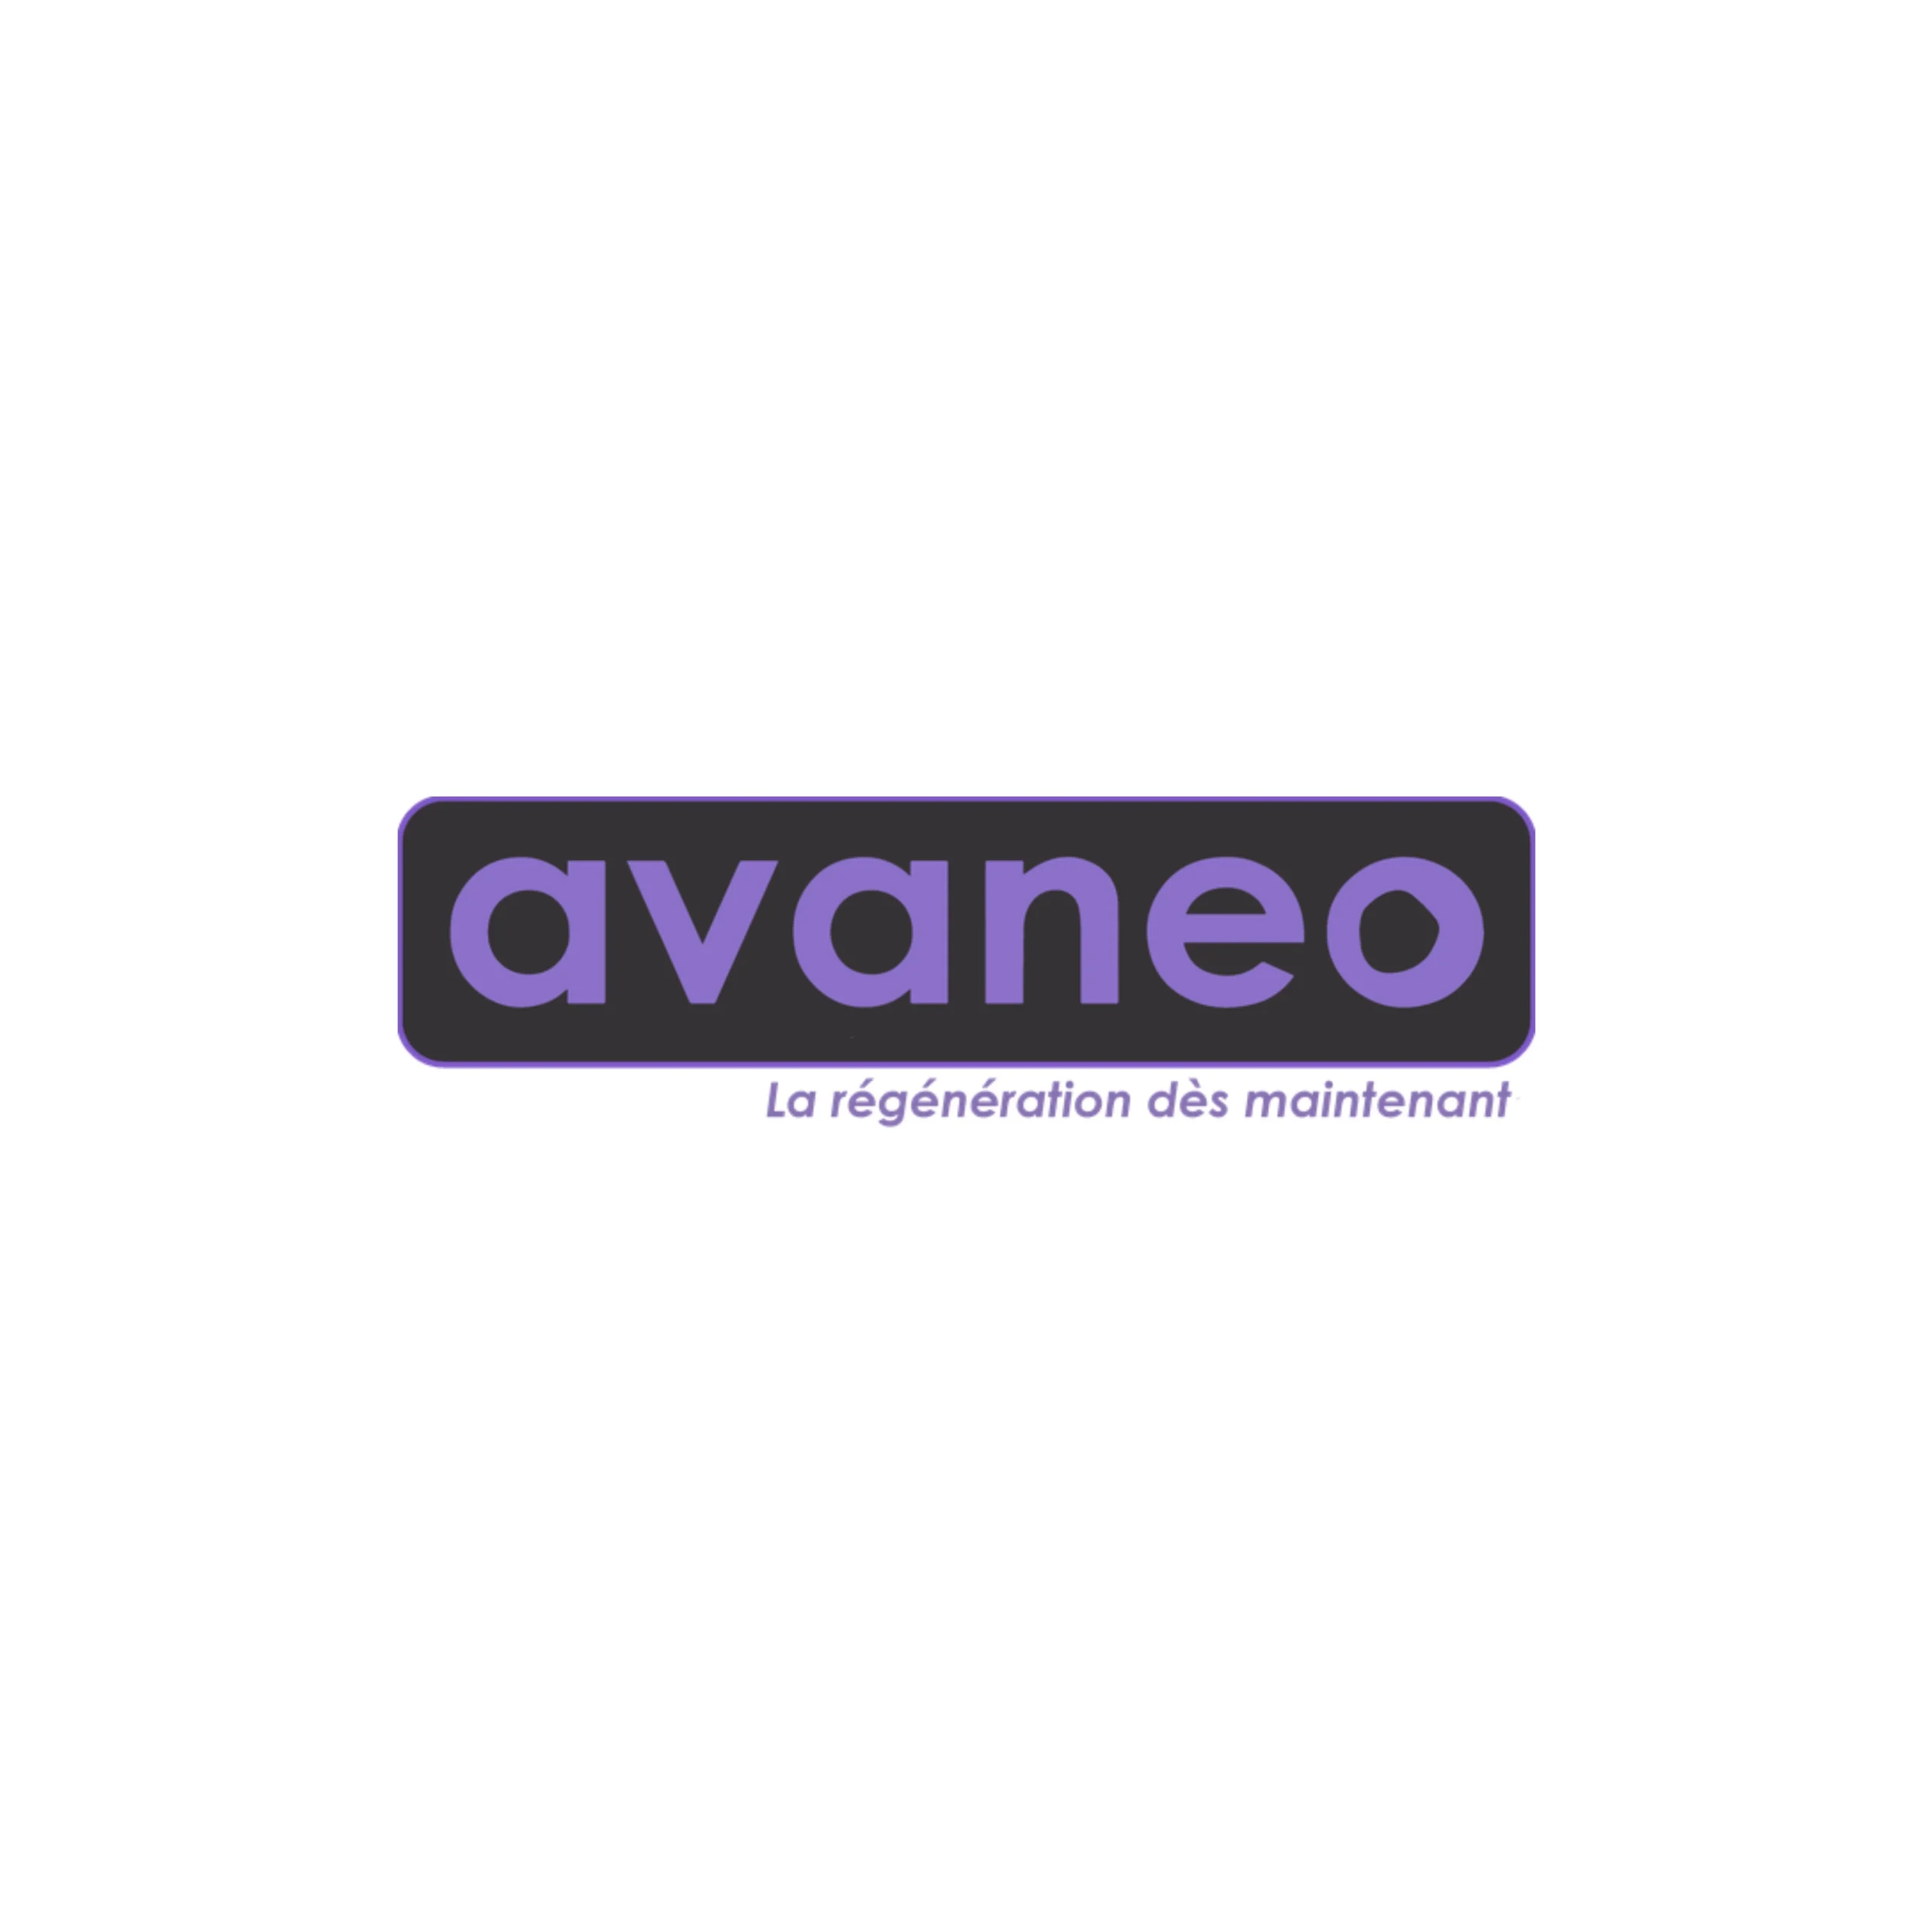 Endromed est partenaire de la société AVANEO, spécialiste en régénération tissulaire dans les domaines de l'esthétique et de la chirurgie des brûlés.